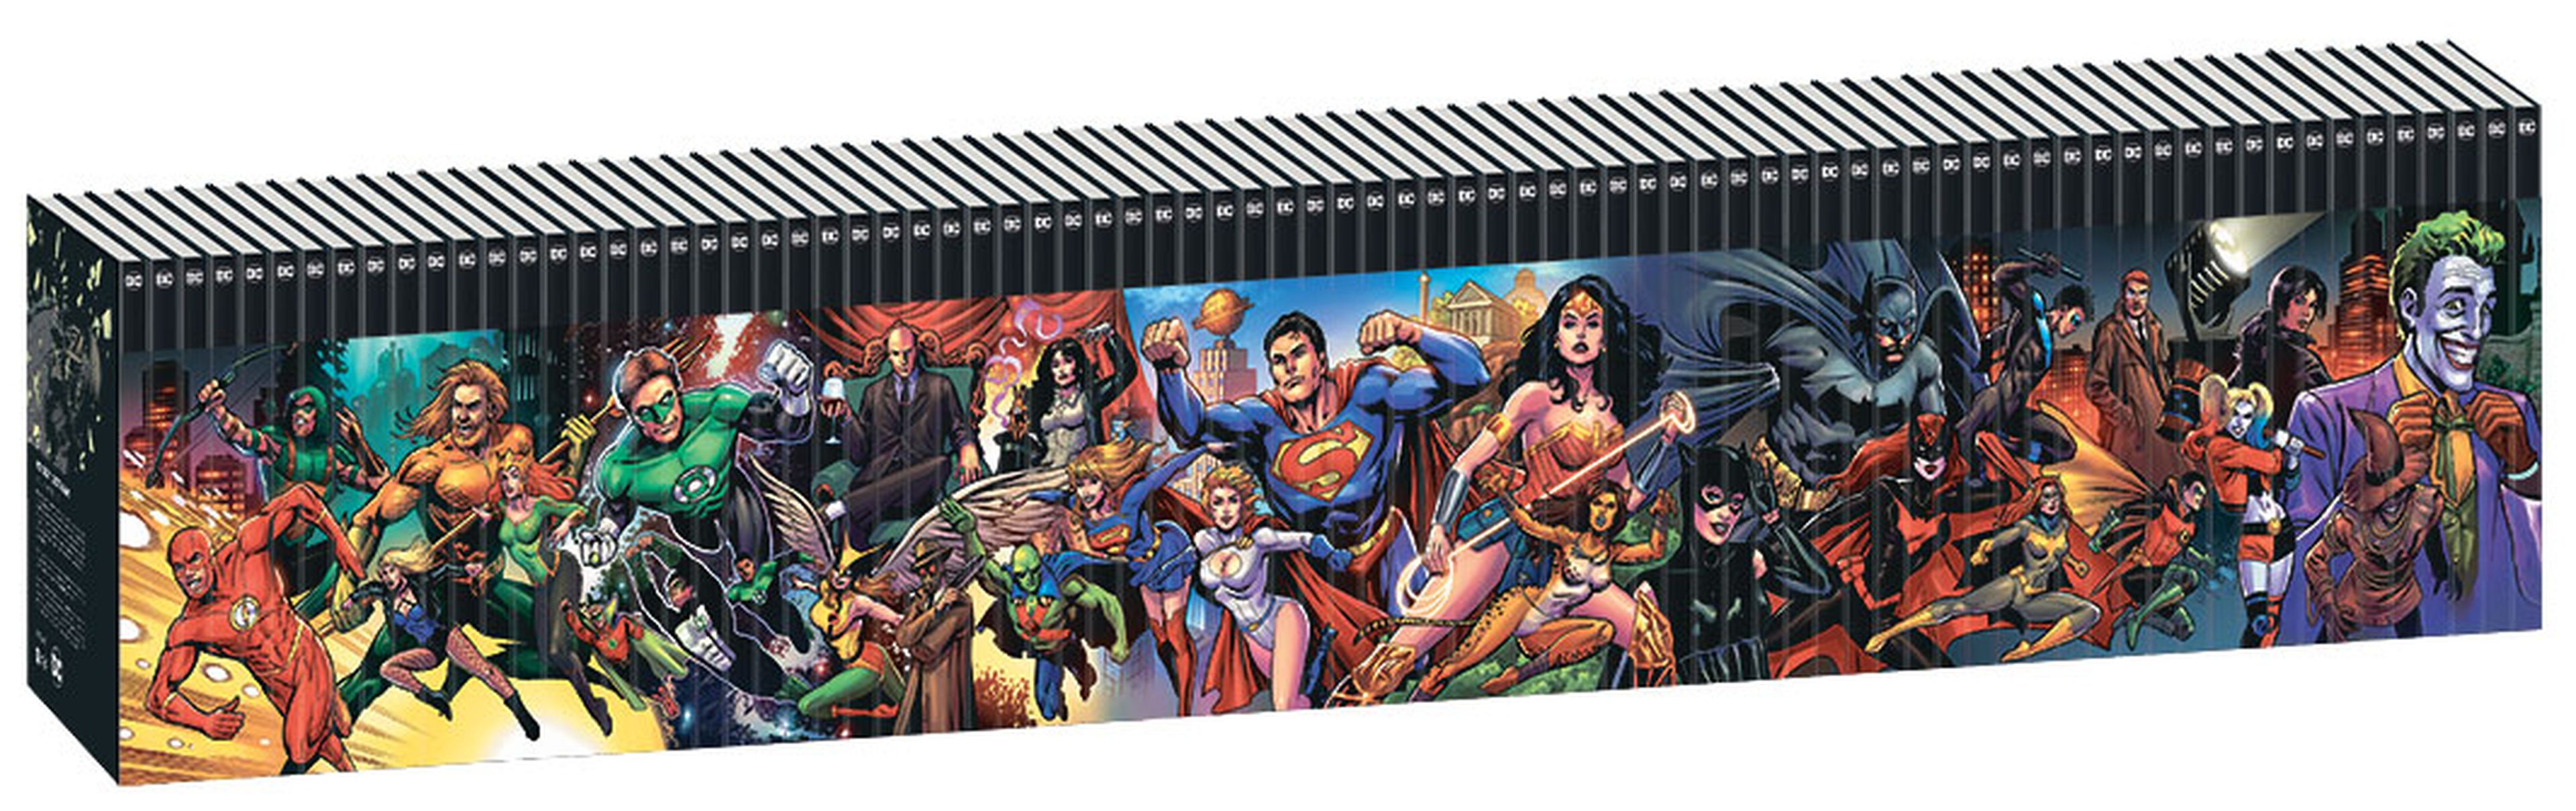 Colección completa DC Héroes y Villanos (Salvat)